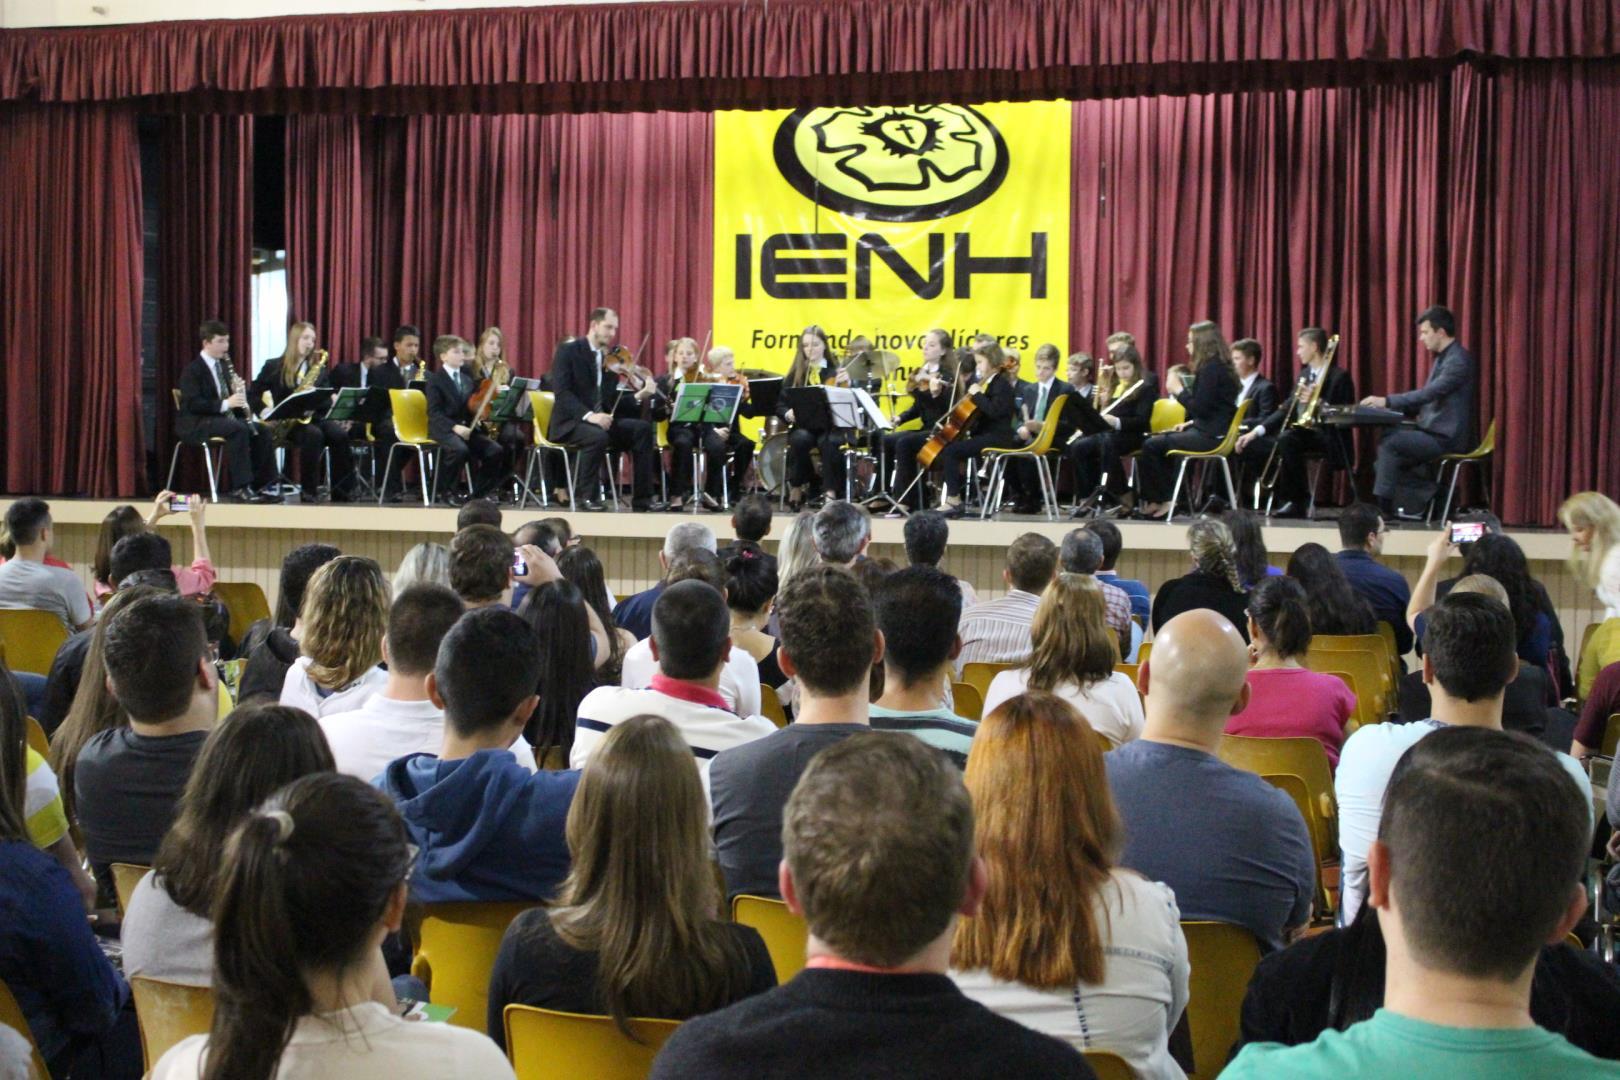 Faculdade IENH comemora 10 anos com concerto musical